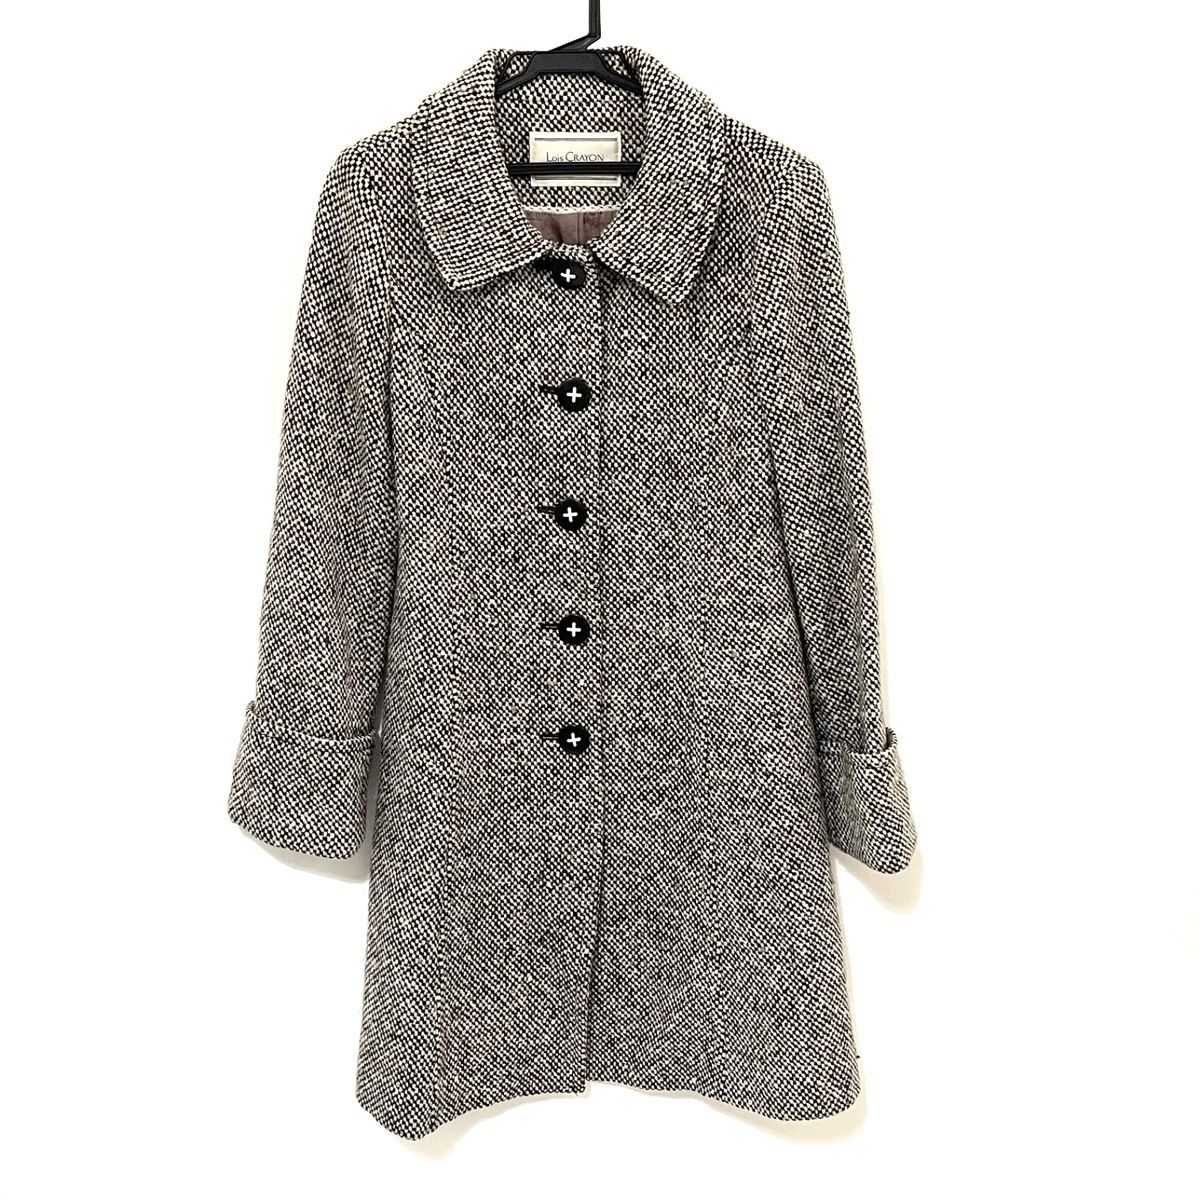 Lois CRAYON(ロイスクレヨン) コート サイズM レディース - 黒×白×マルチ 長袖/冬